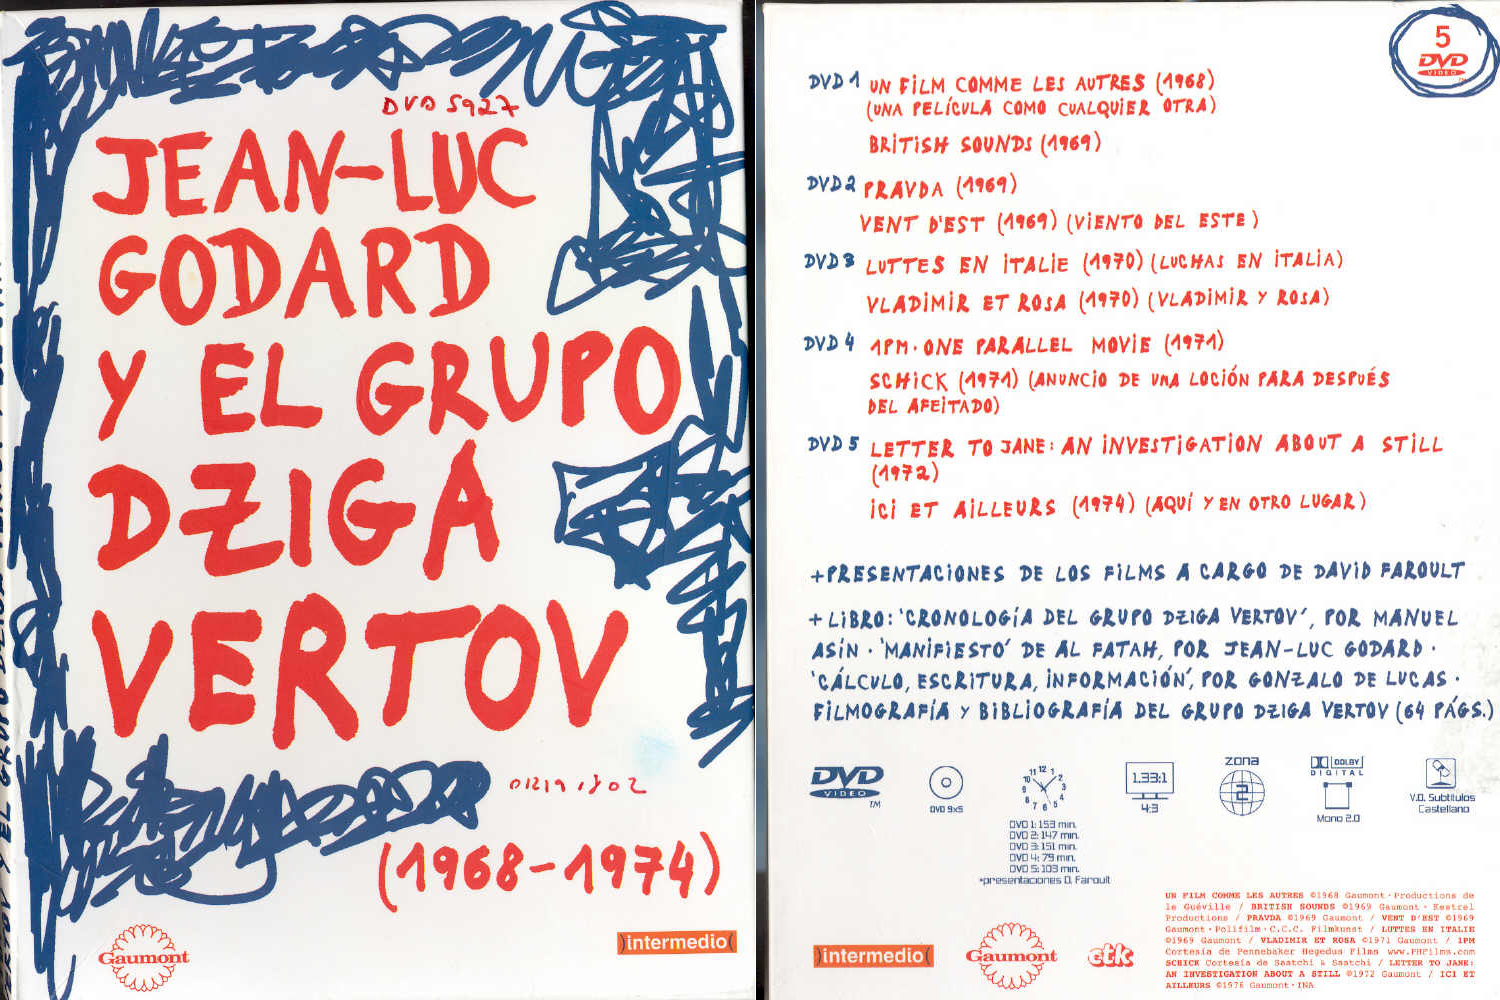 Mostra Grupo Dziga Vertov - UOL 17/08/2005